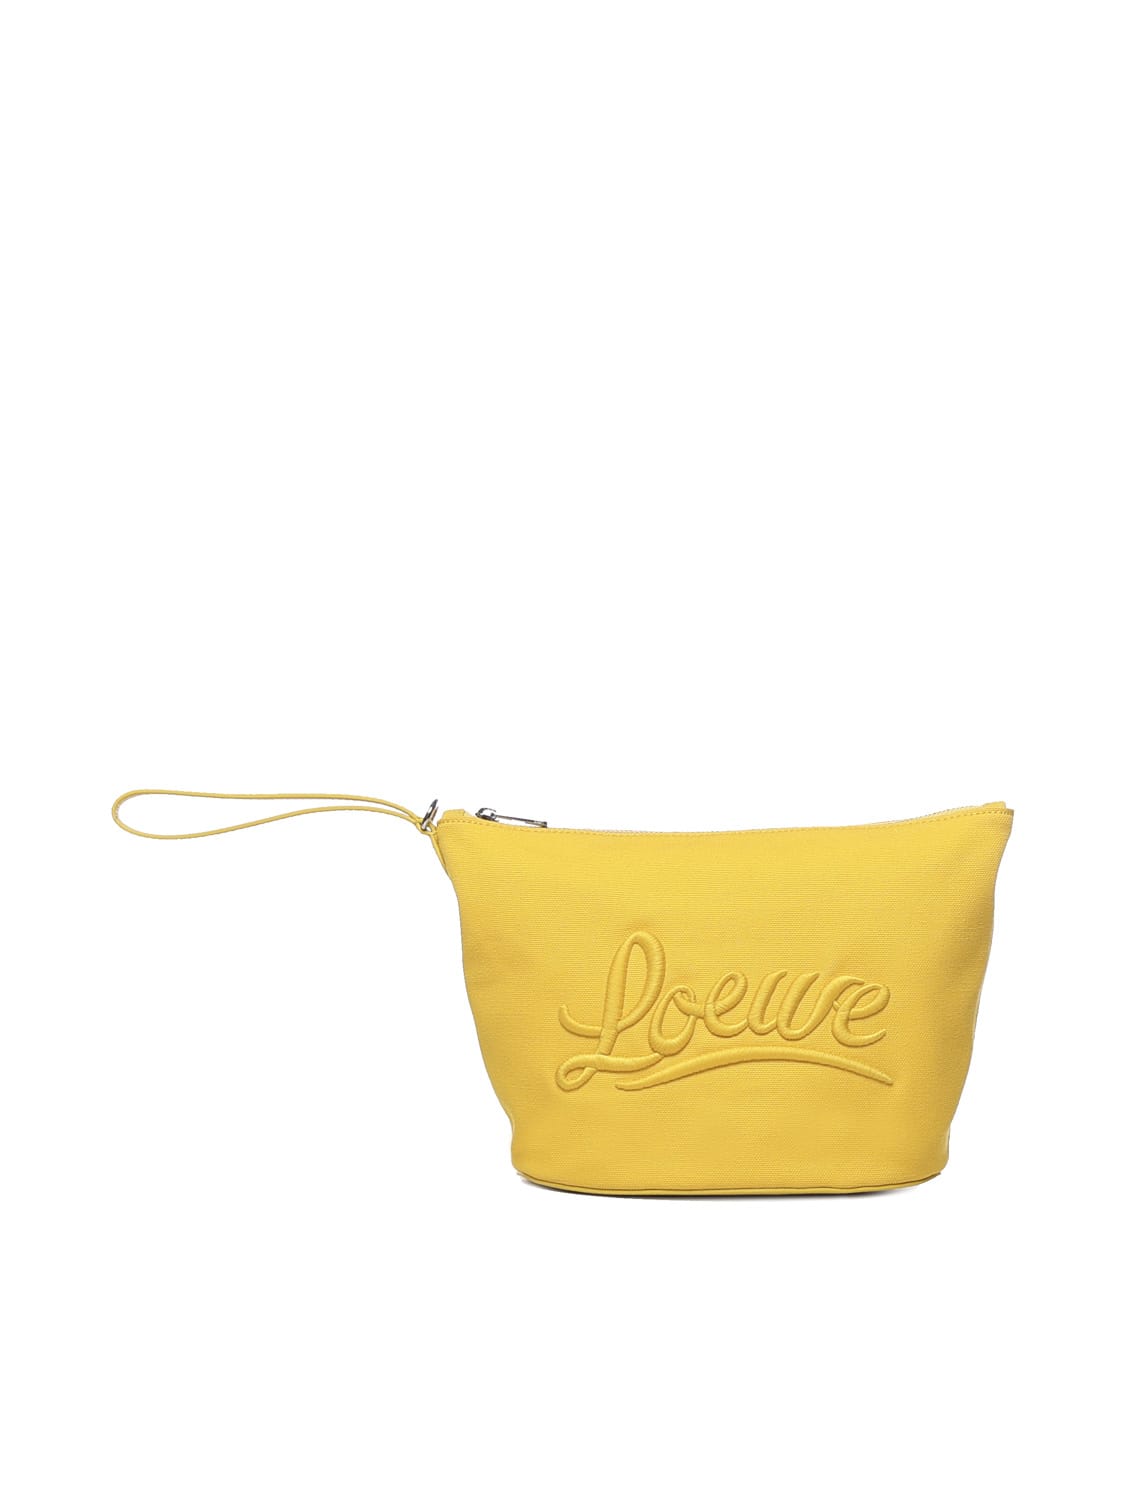 Loewe X Paulas Ibiza Cosmetic Bag